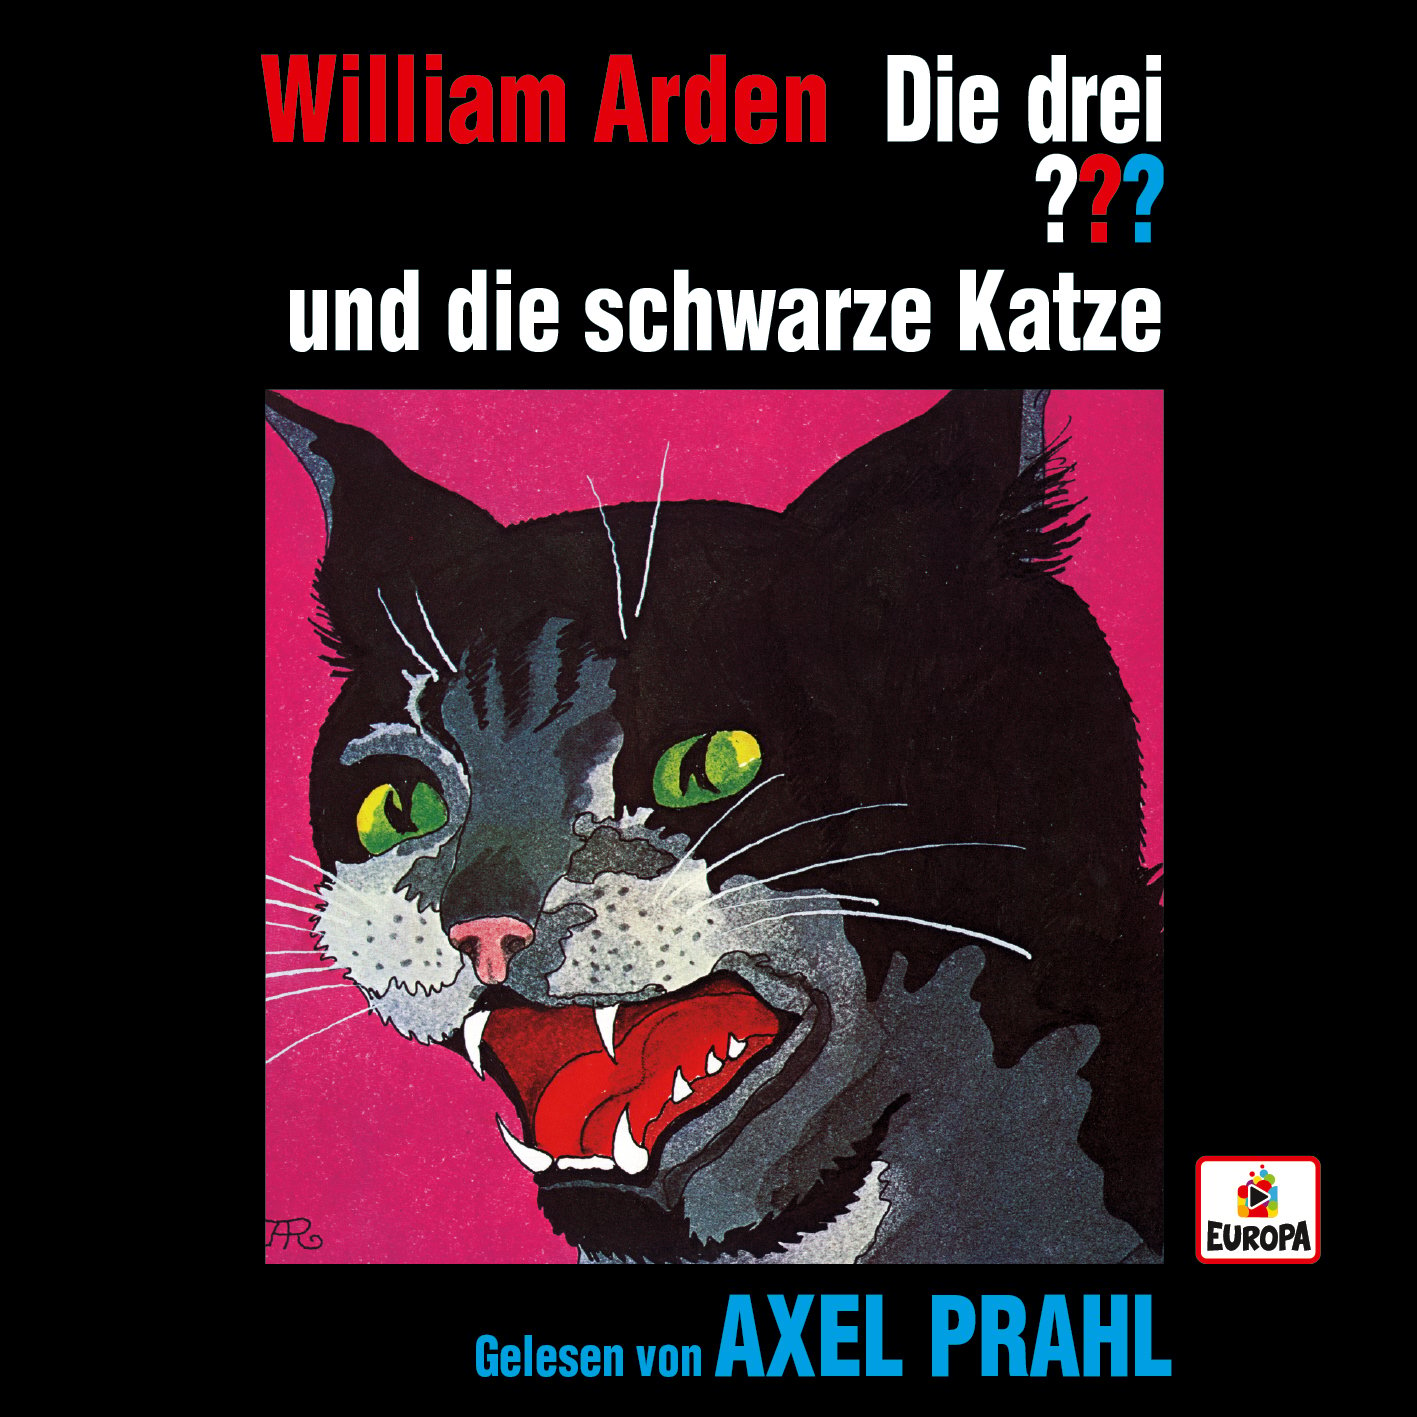 Die drei ??? - Die drei ??? x Axel Prahl liest... und die schwarze Katze